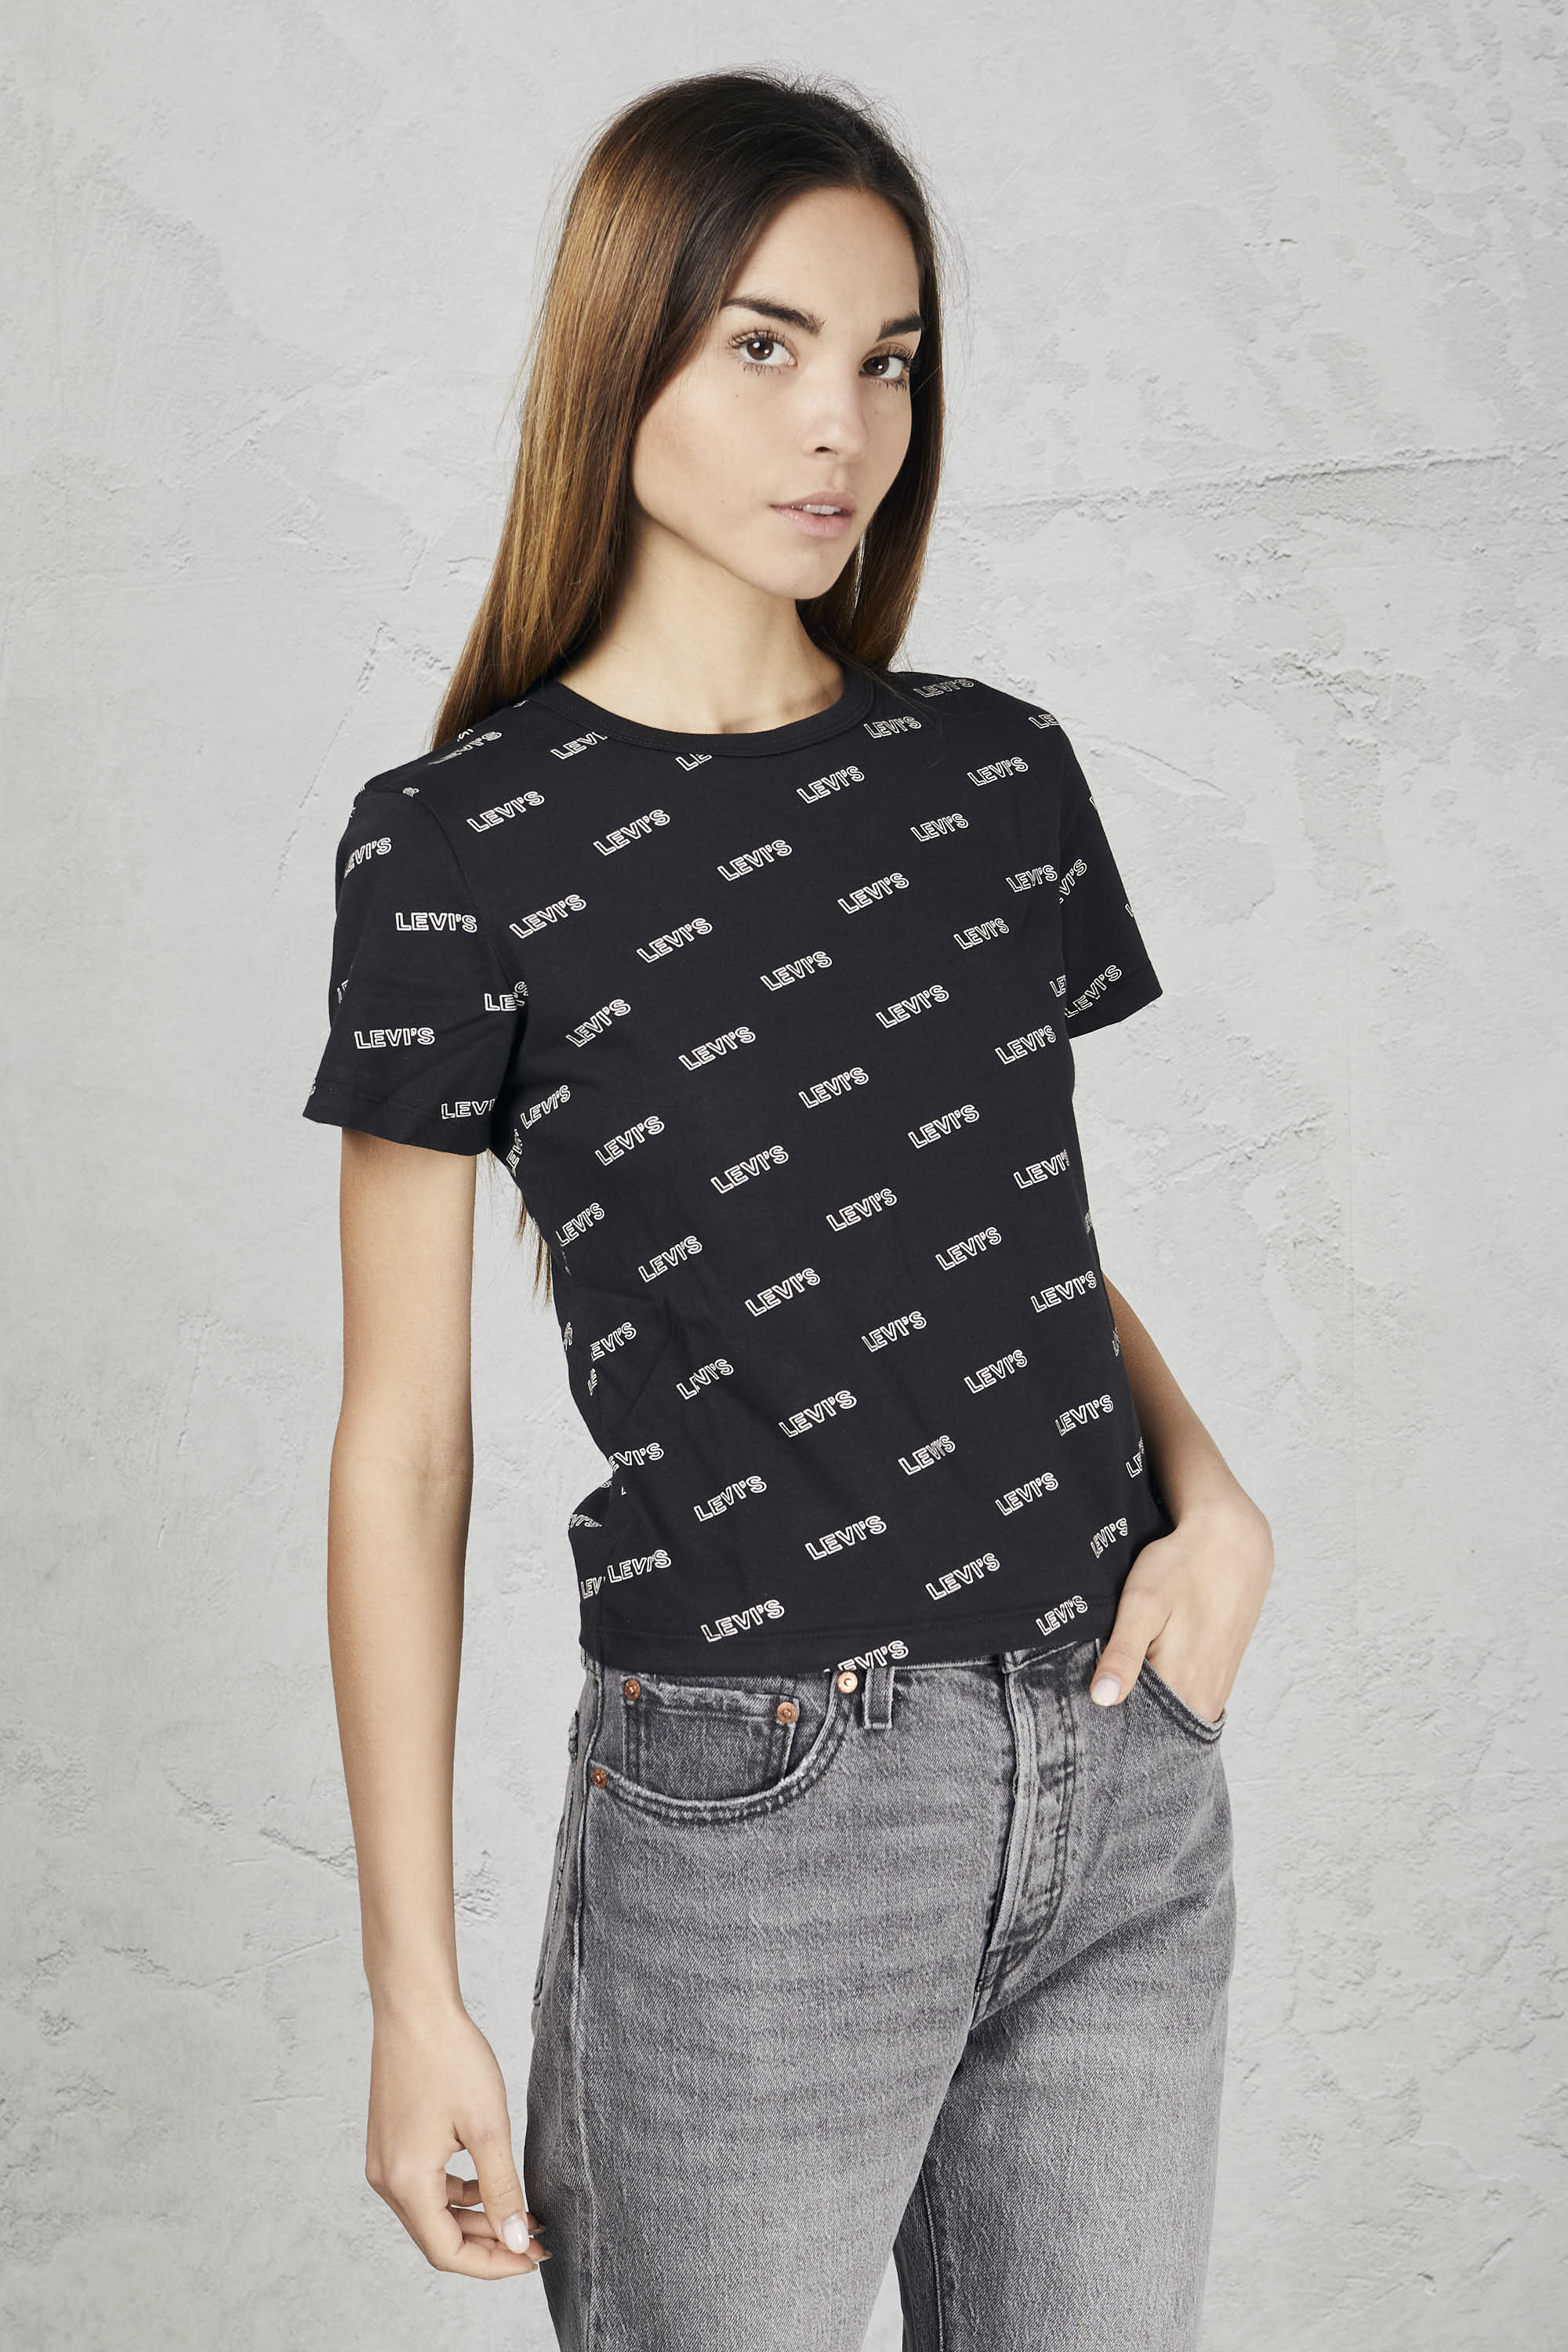 T-shirt con grafica » Charlotte Abbigliamento